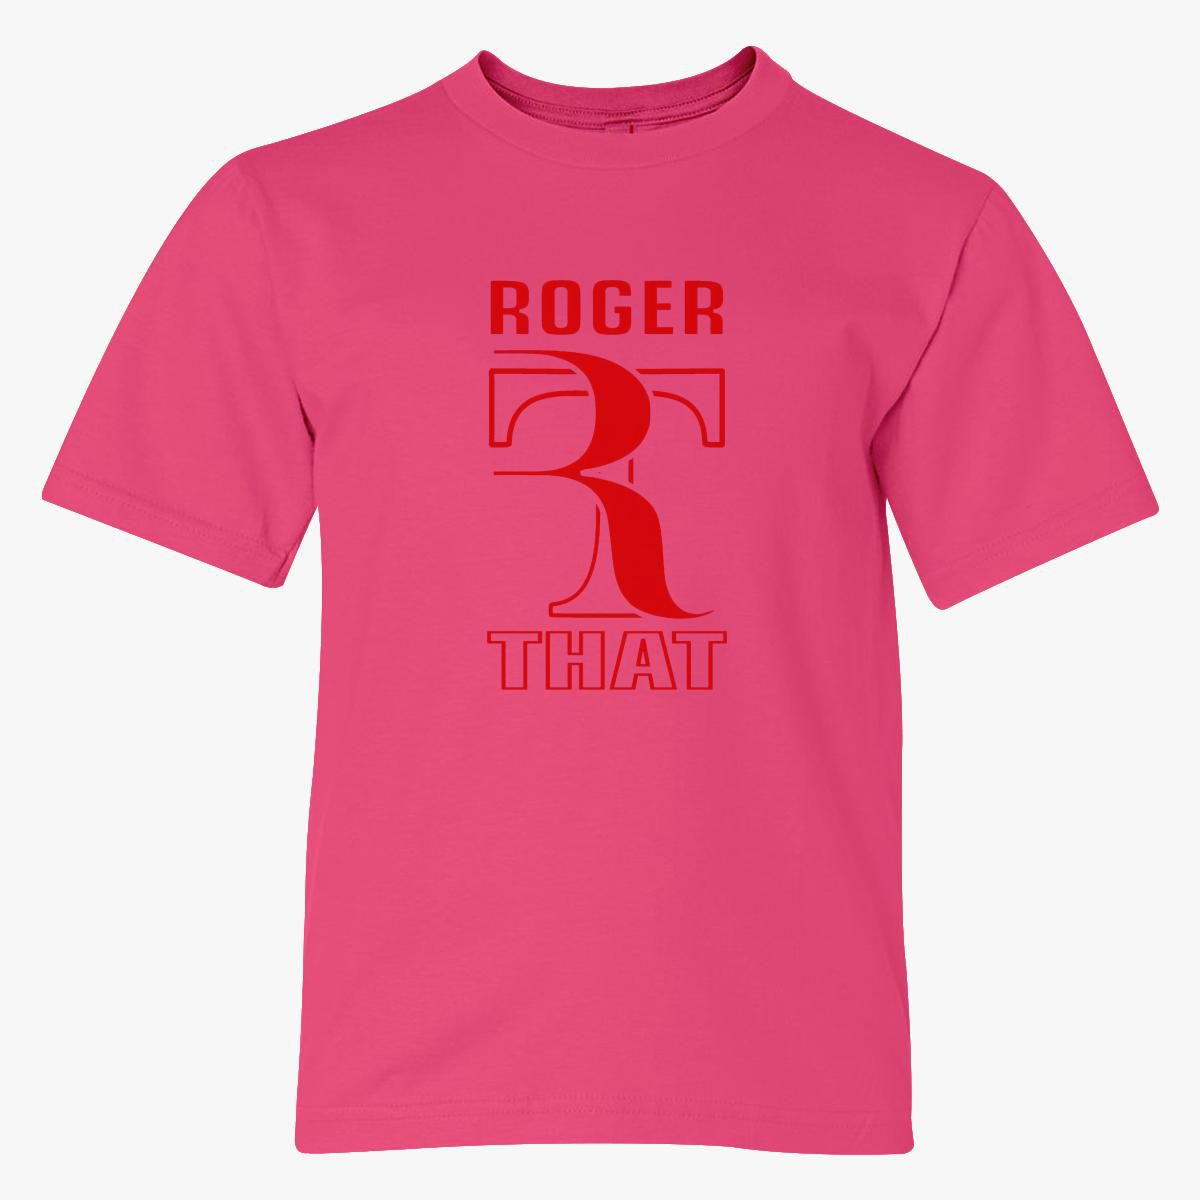 Roger Federer Roger That Youth T-shirt - Customon